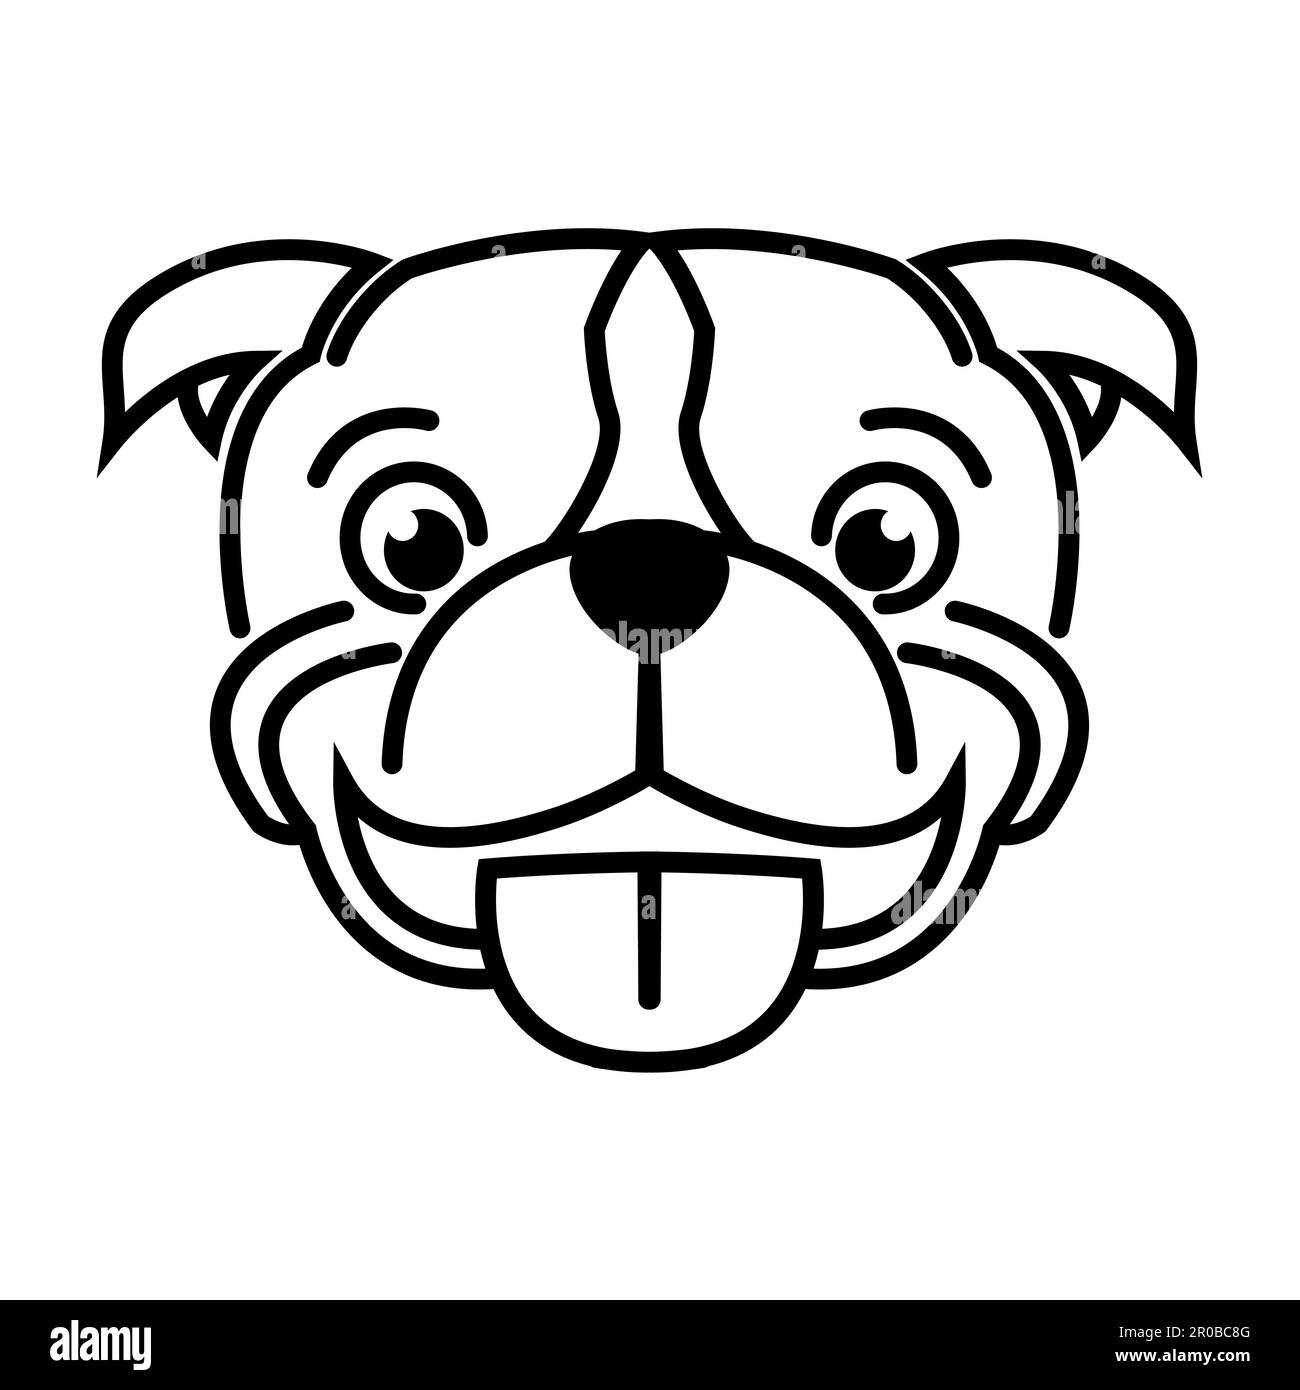 Illustration de la ligne noire et blanche de la tête de chien Pitbull. Bon usage pour symbole mascotte icône avatar tatouage T shirt design logo ou n'importe quel design Illustration de Vecteur